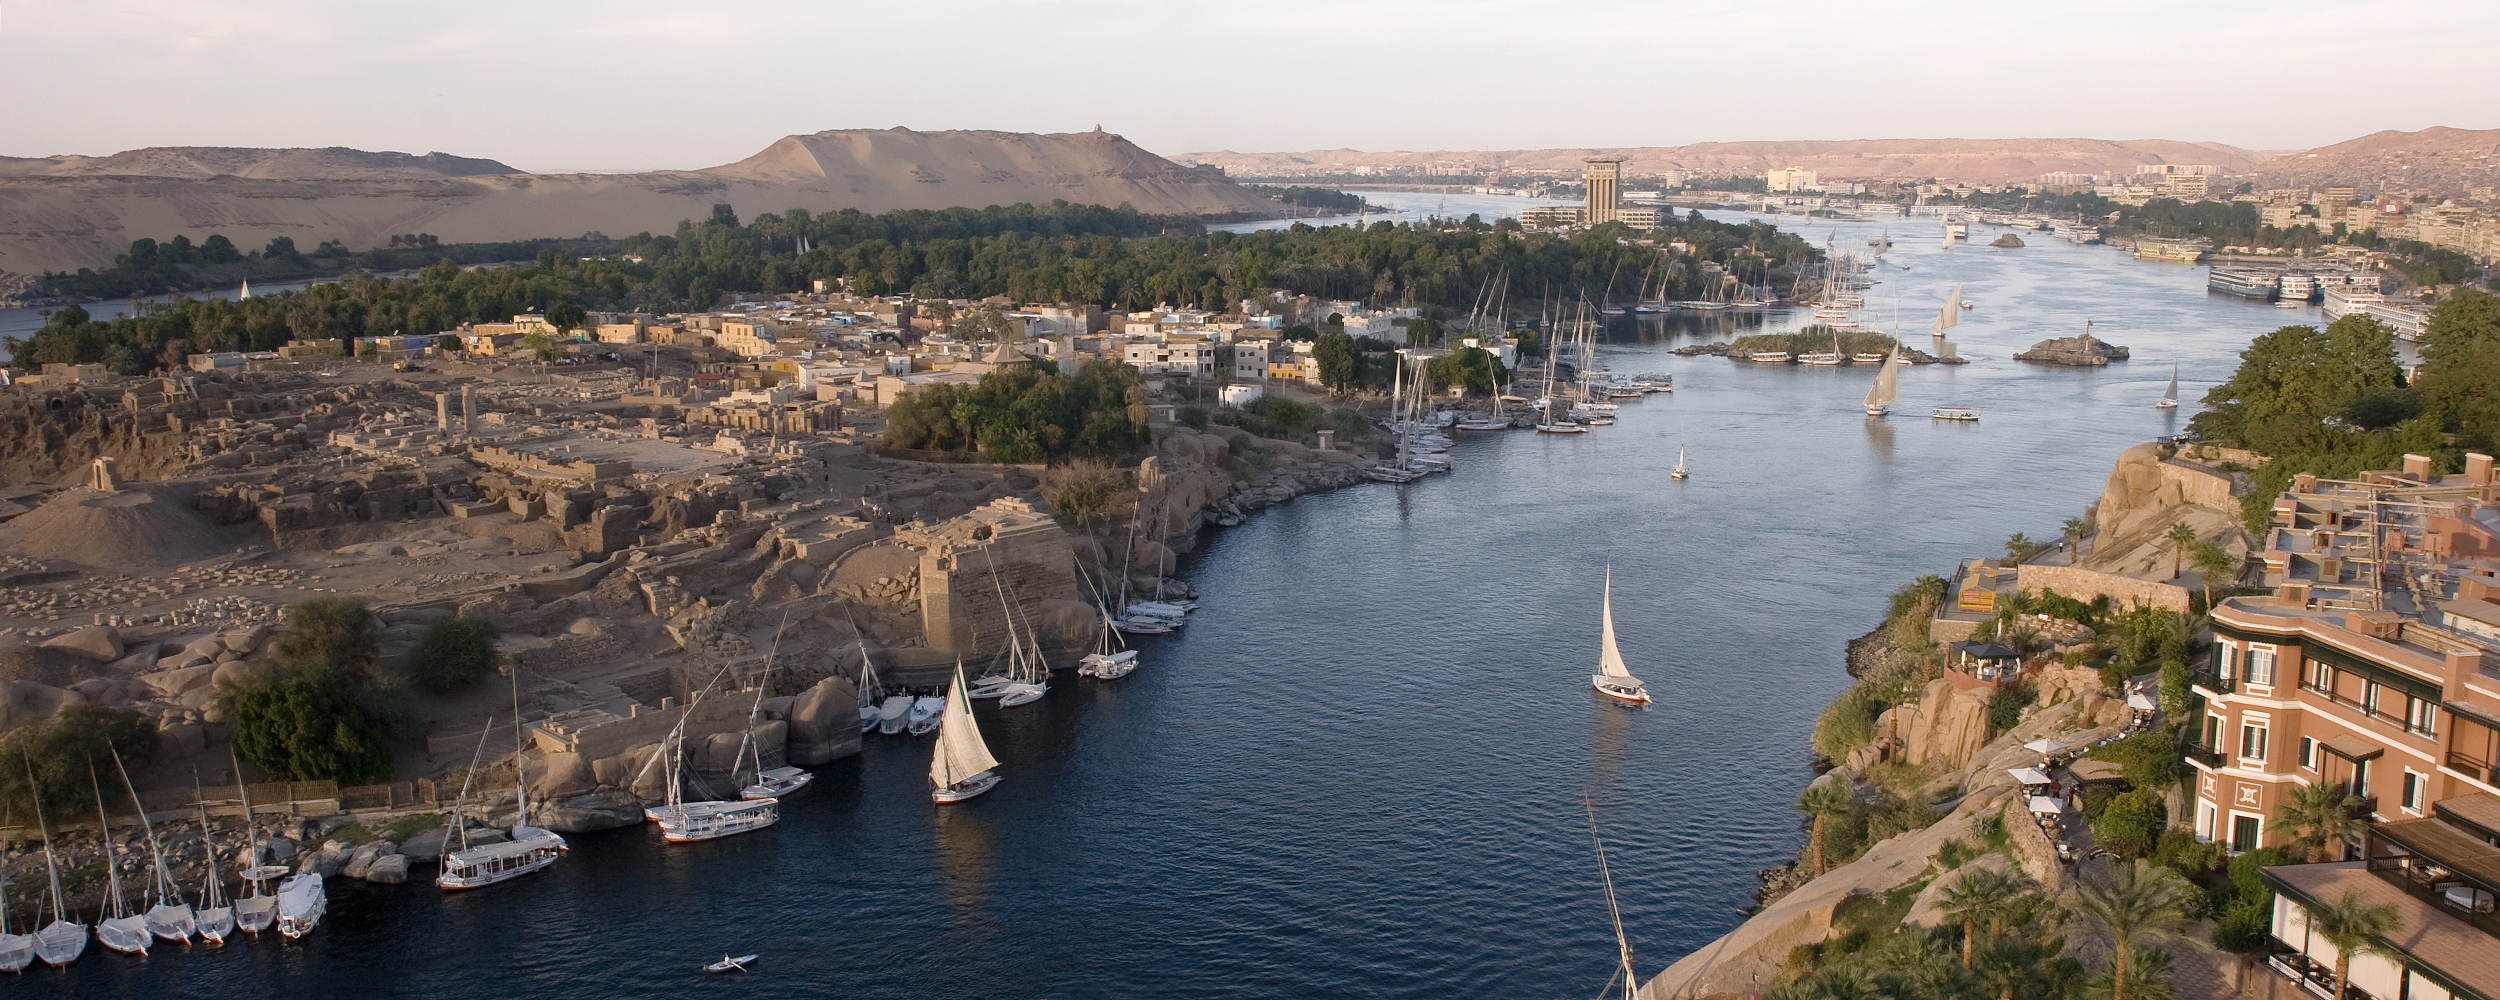 The Nile River Basin Initiative | RTI